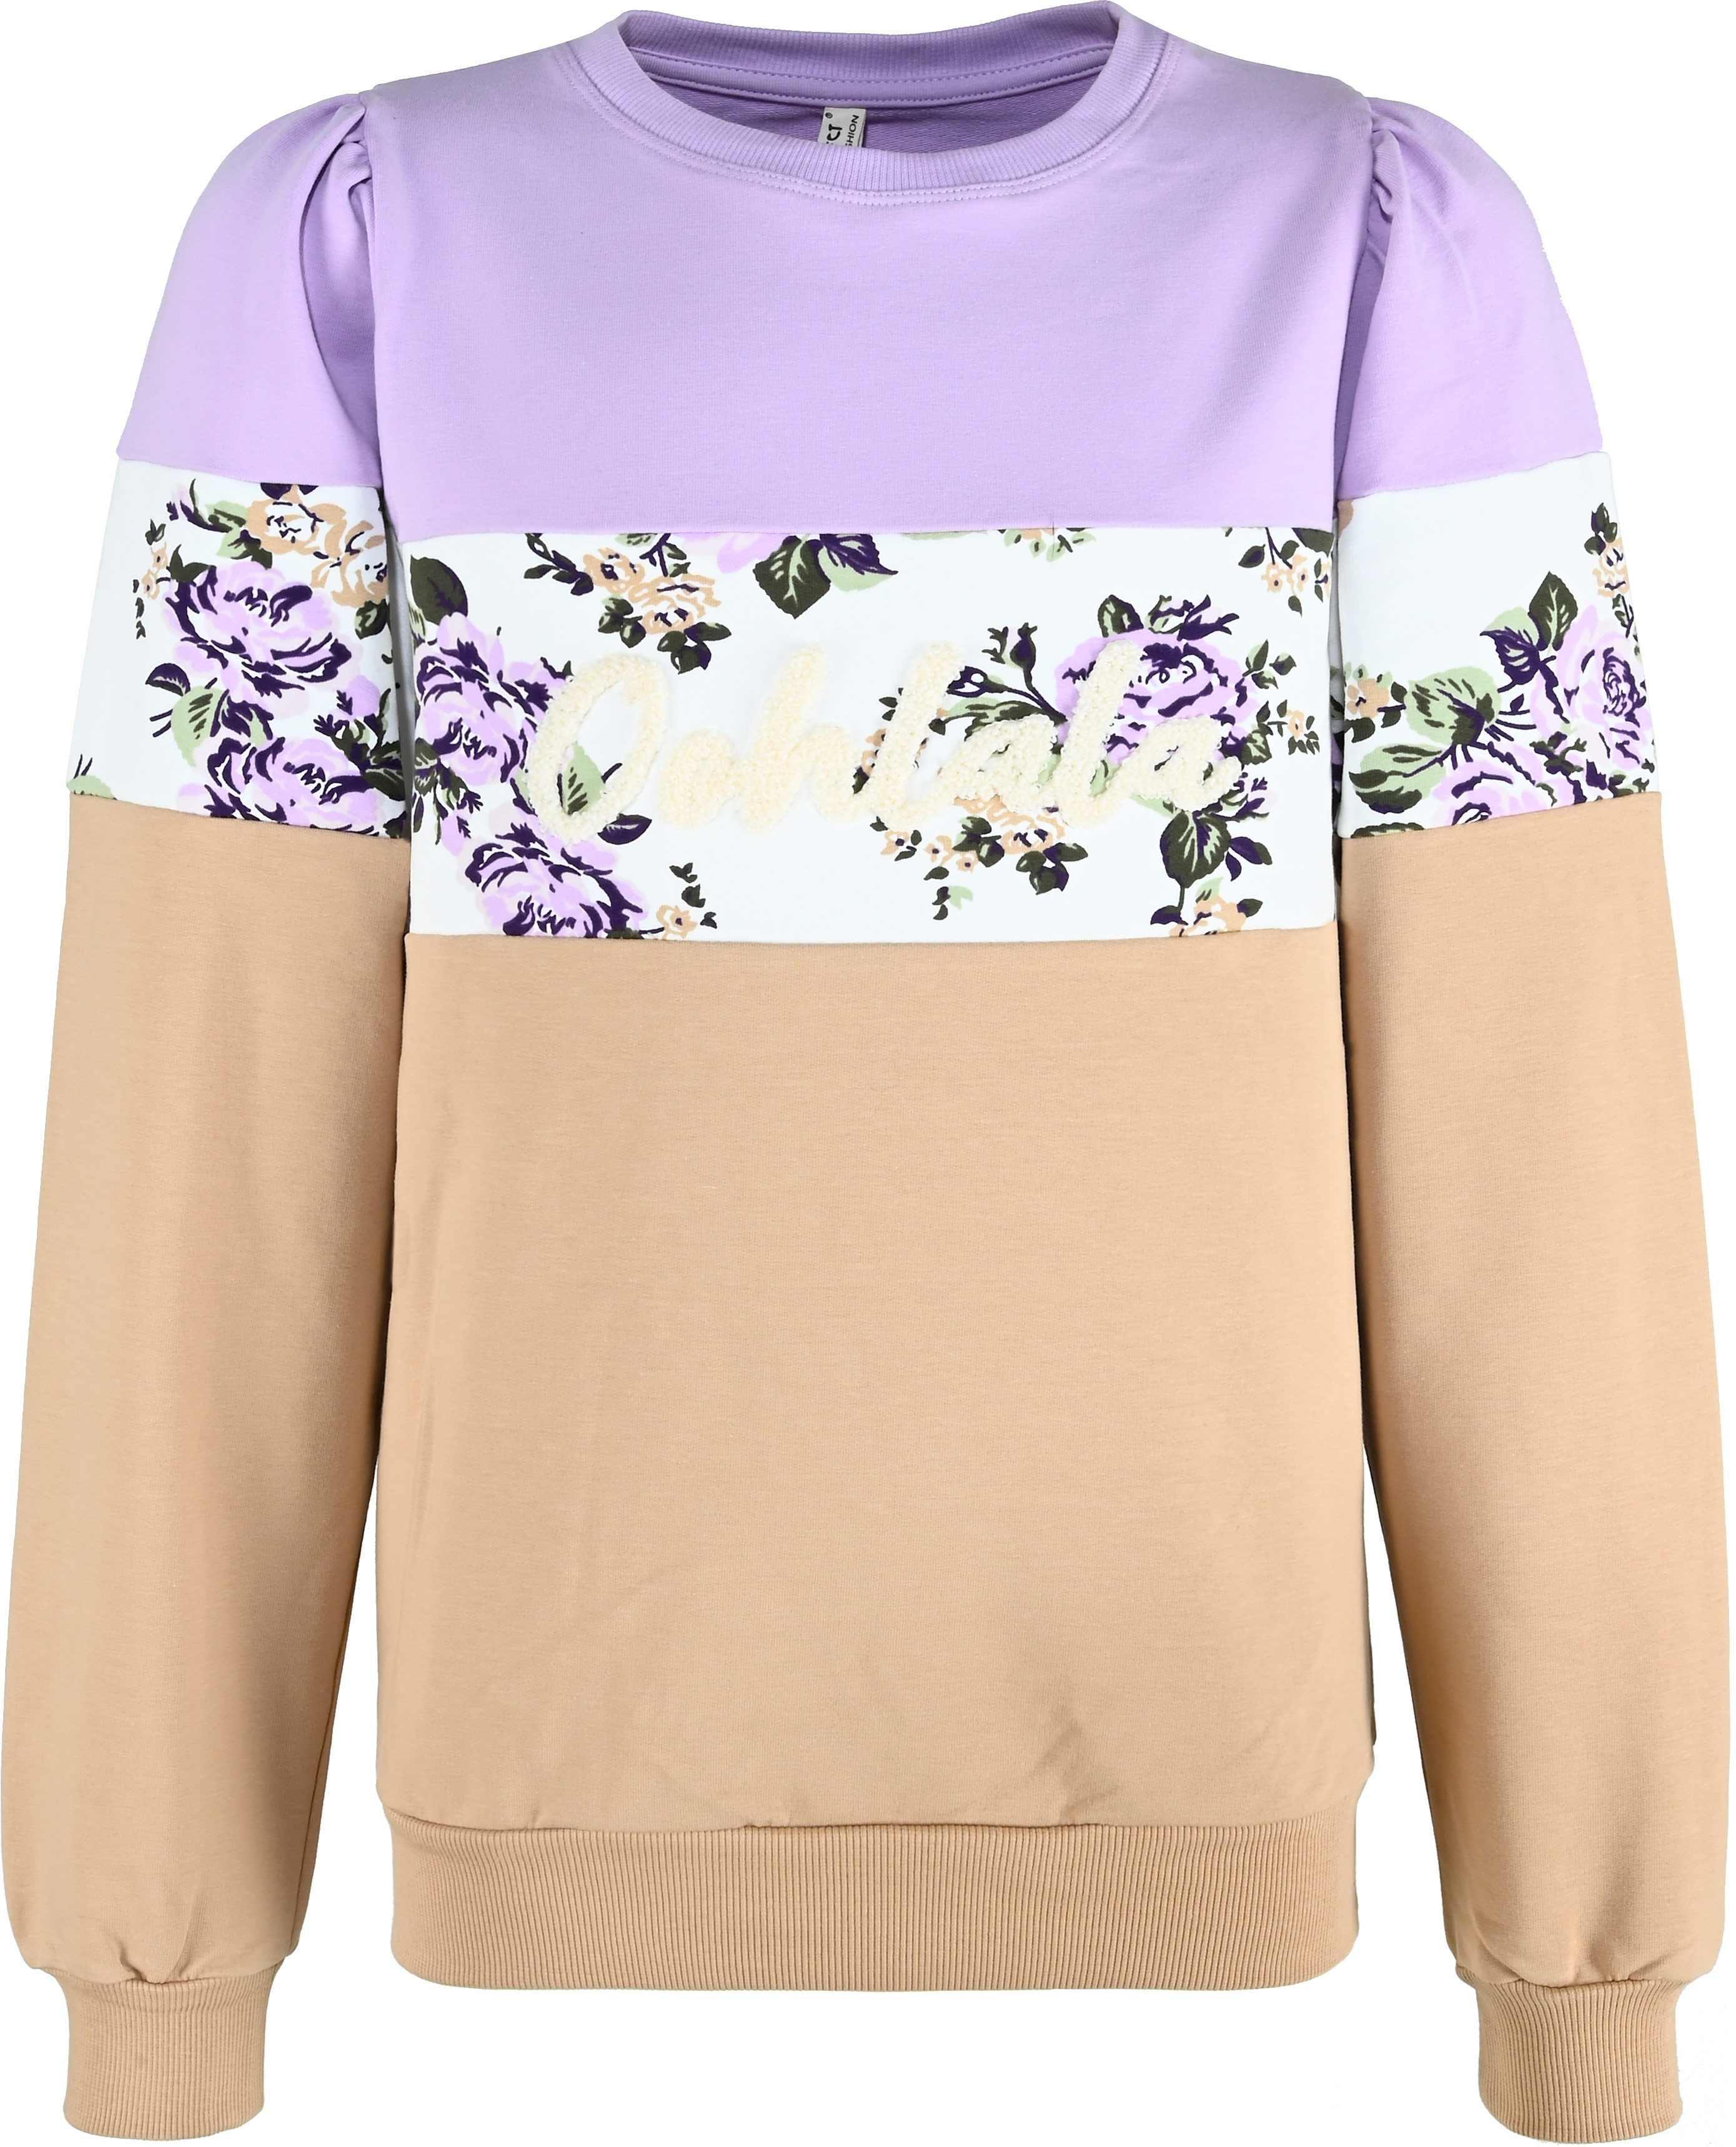 5695-Girls Sweatshirt Color Block -Oohlala